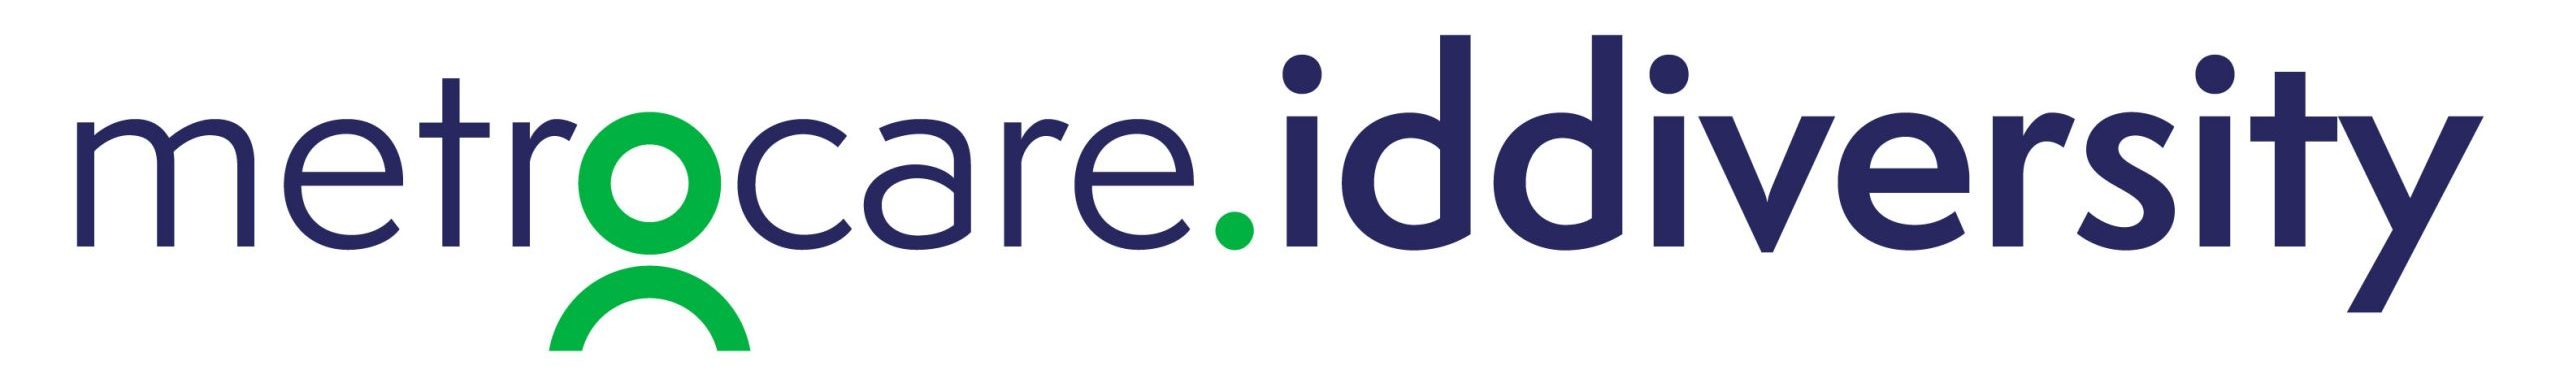 iddiversity logo RGB scaled e1711050731730